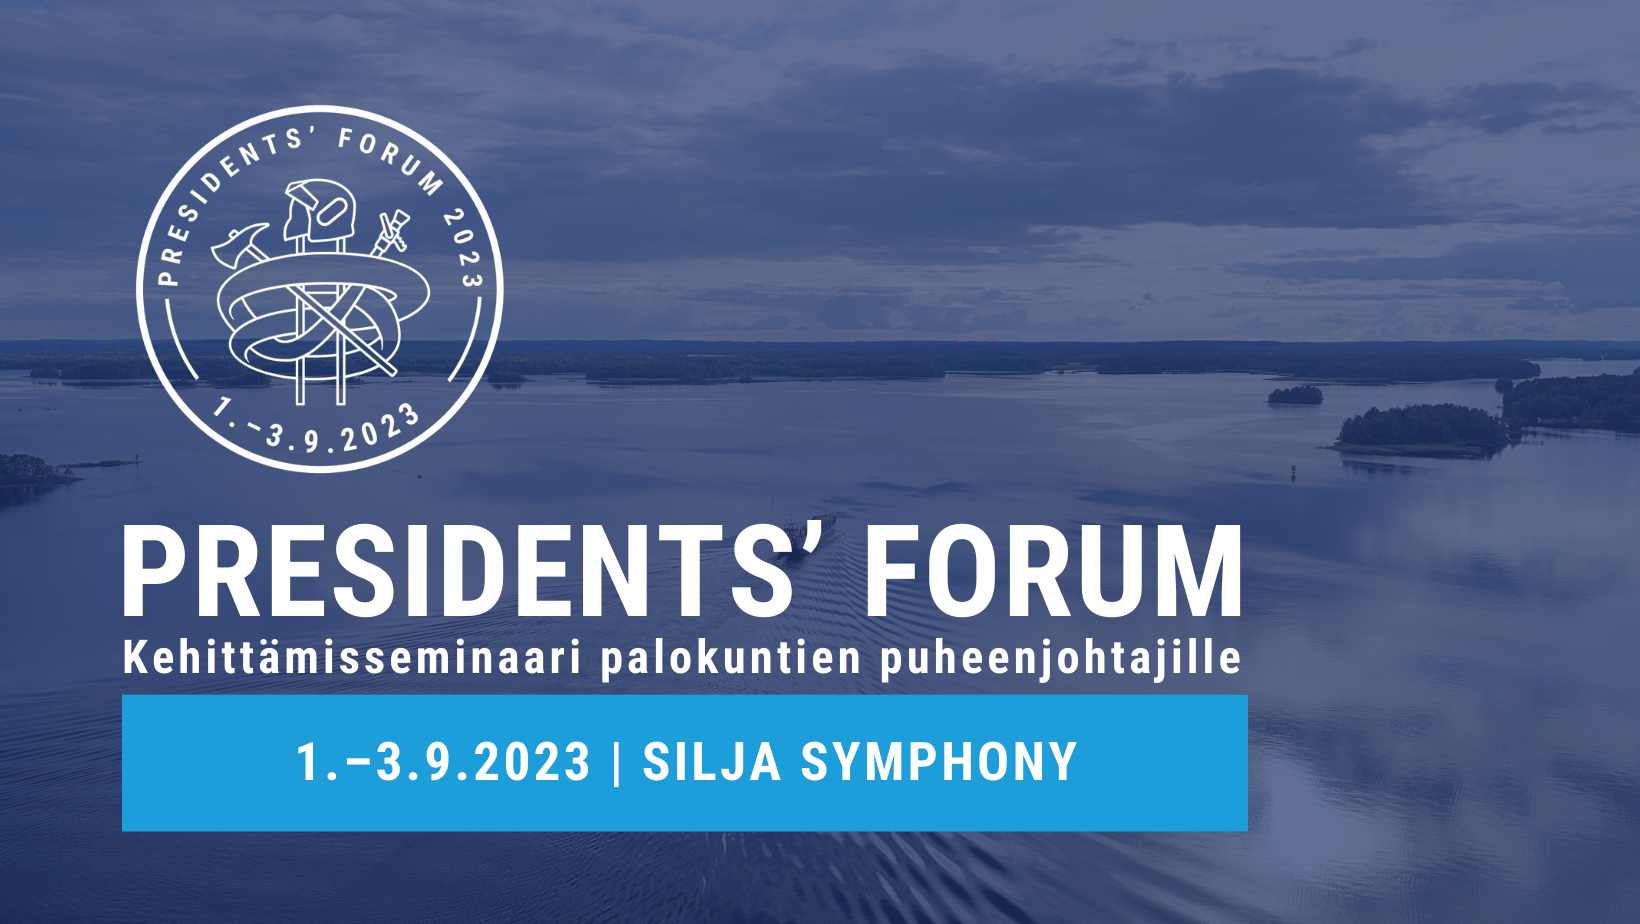 Sumea sininen tausta, jossa merellinen maisema, President's Forum -logo ja teksti President's Forum kehittämisseminaari palokuntien puheenjohtajille 1.–3.9.2022 Silja Symphony